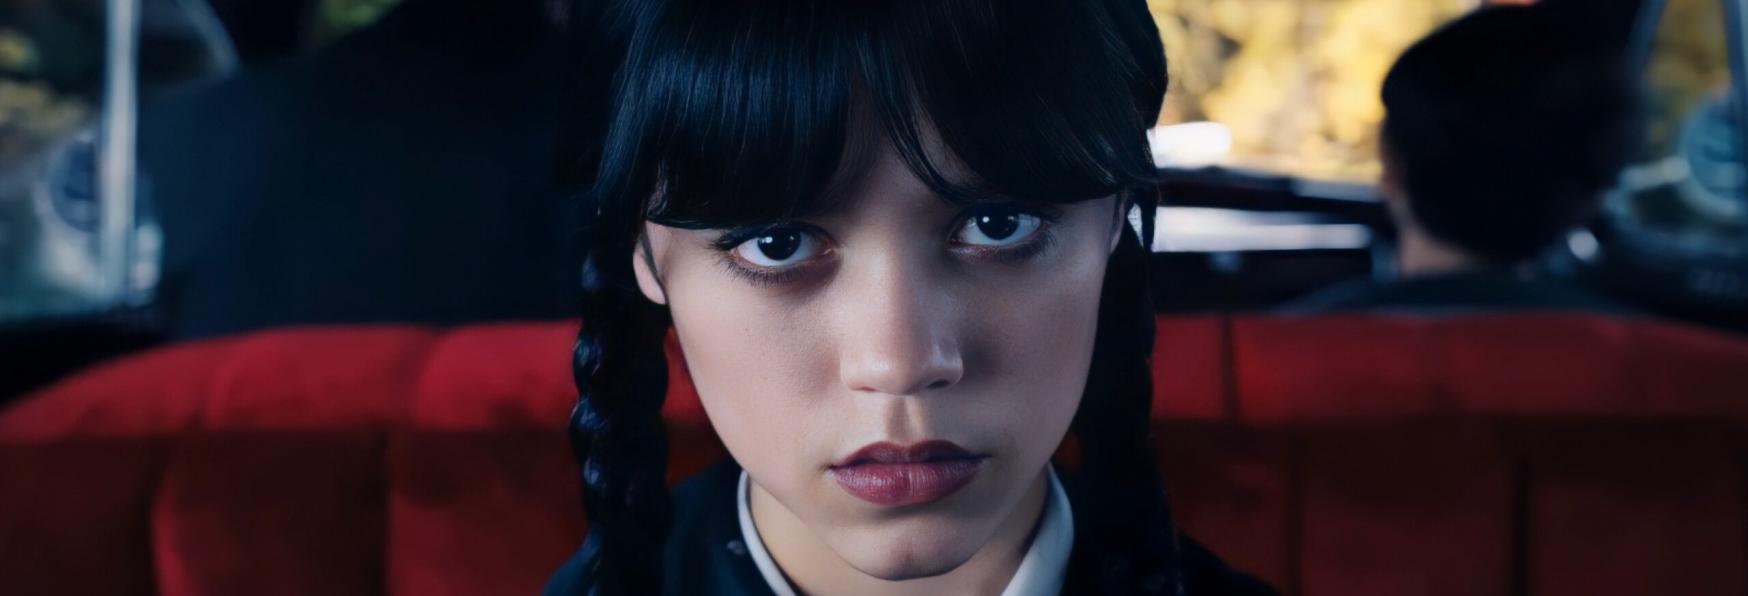 Mercoledì: pubblicato il Teaser Trailer della nuova Serie TV Netflix sulla Famiglia Addams